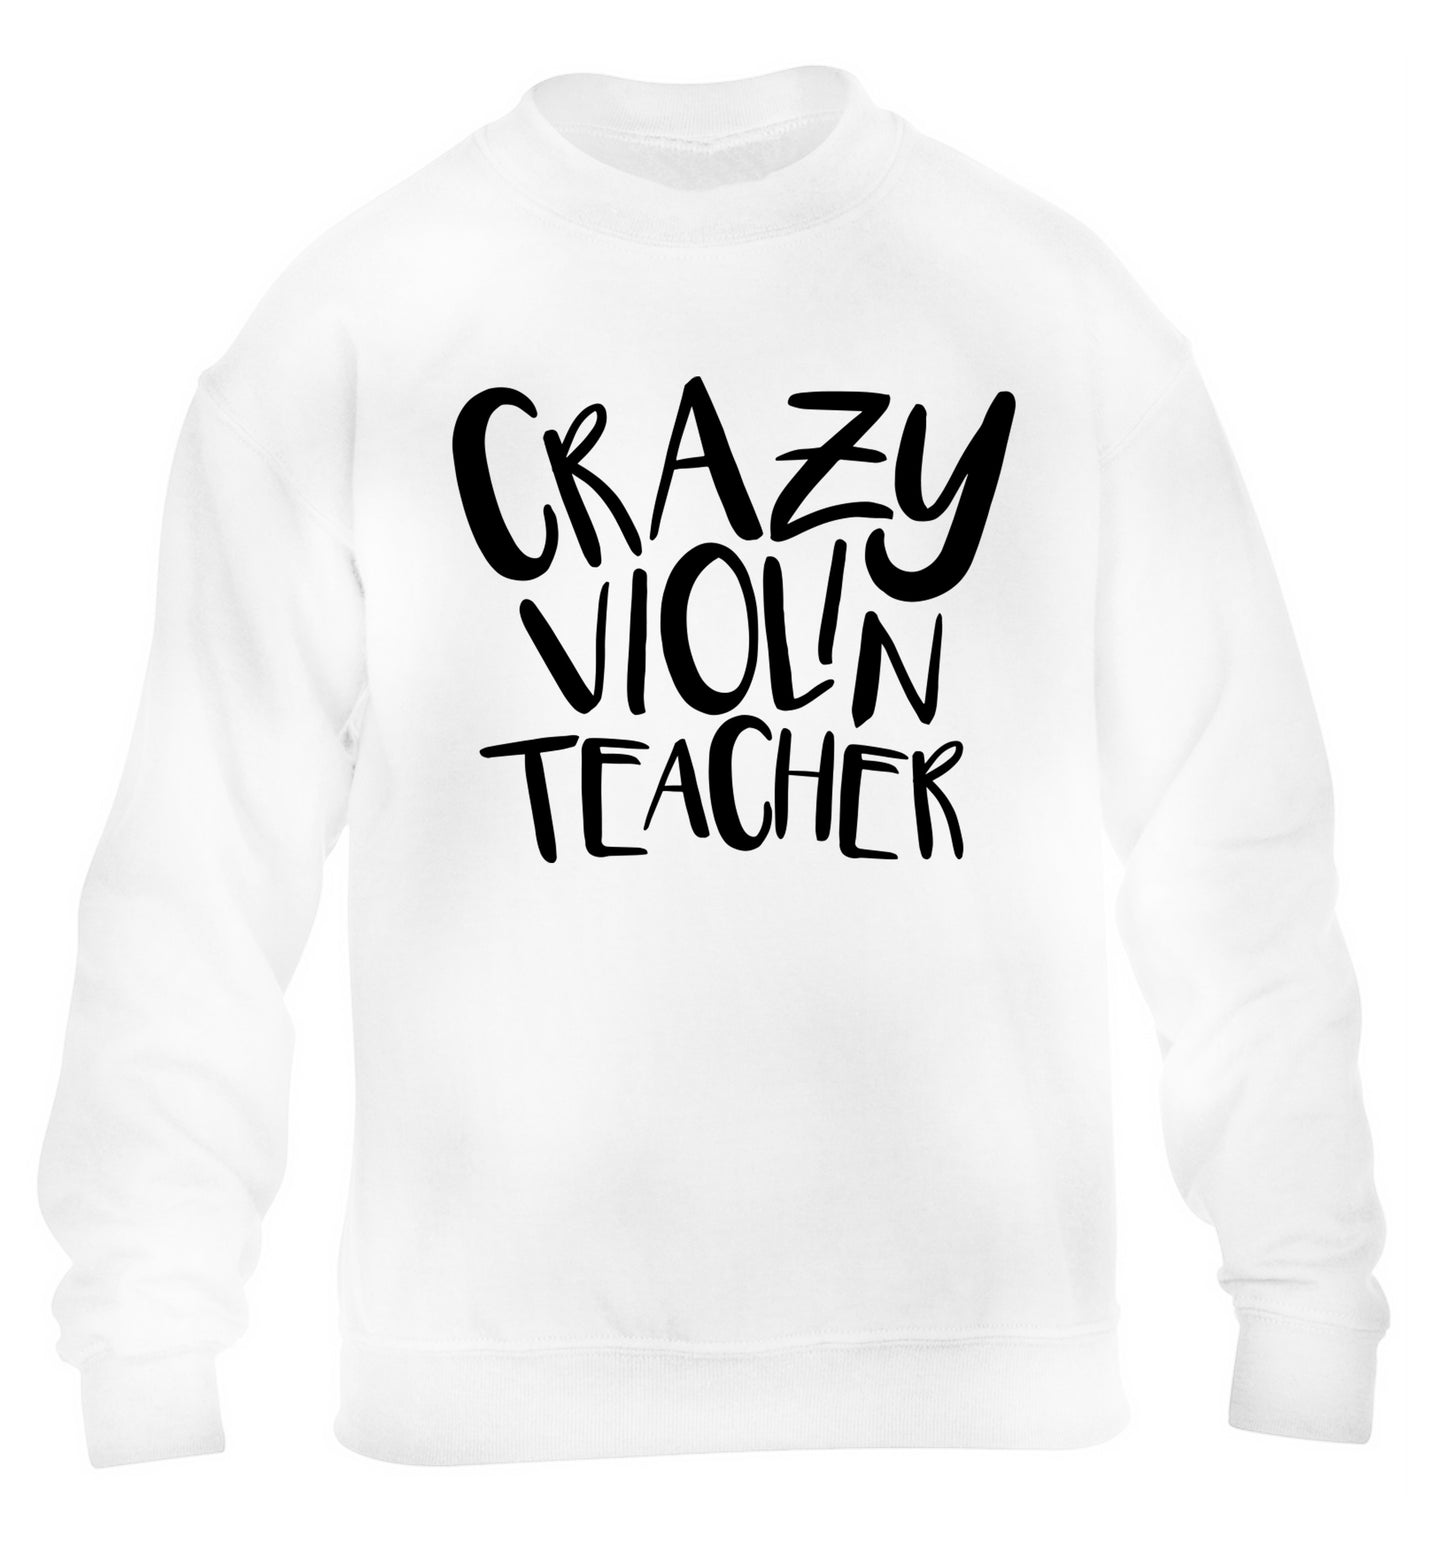 Crazy violin teacher children's white sweater 12-13 Years